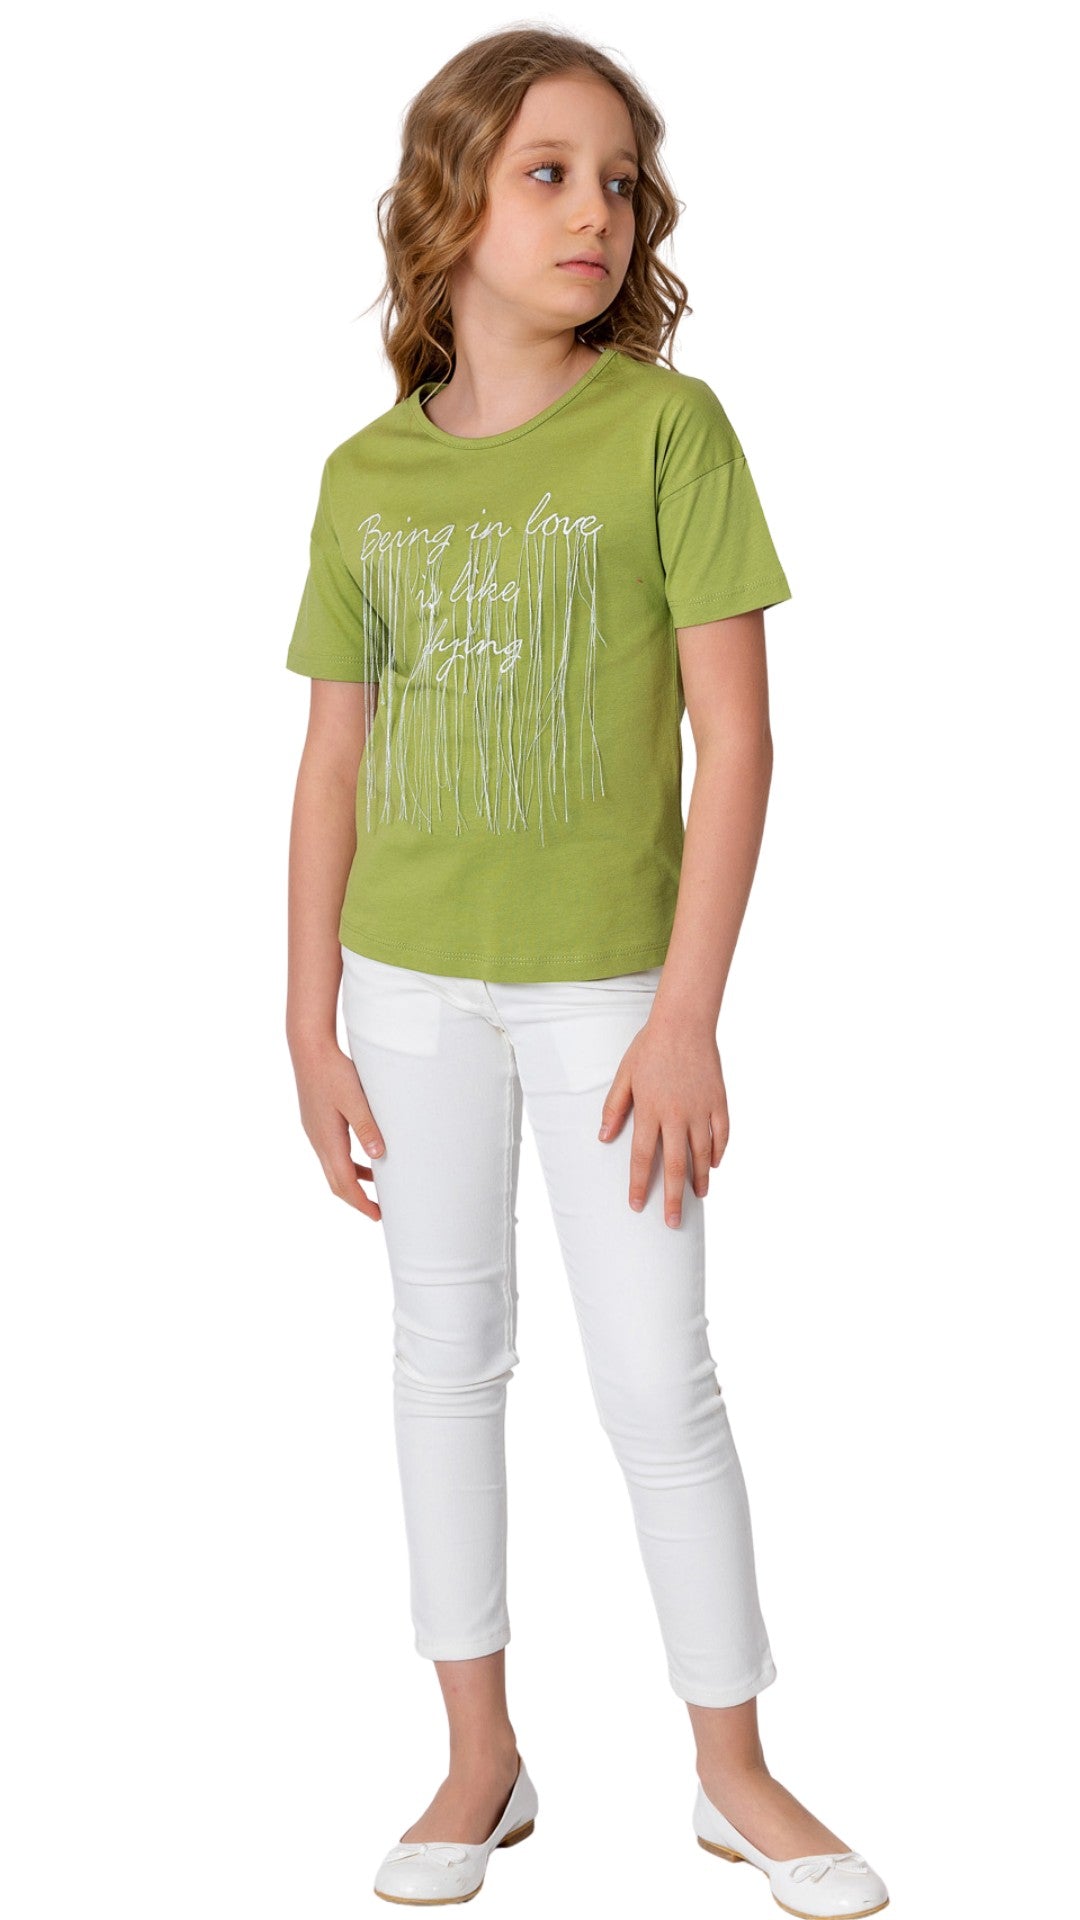 InCity Girls Tween 7-14 Everyday Casual Comfy Short Sleeve Doors T-shirt InCity Boys & Girls